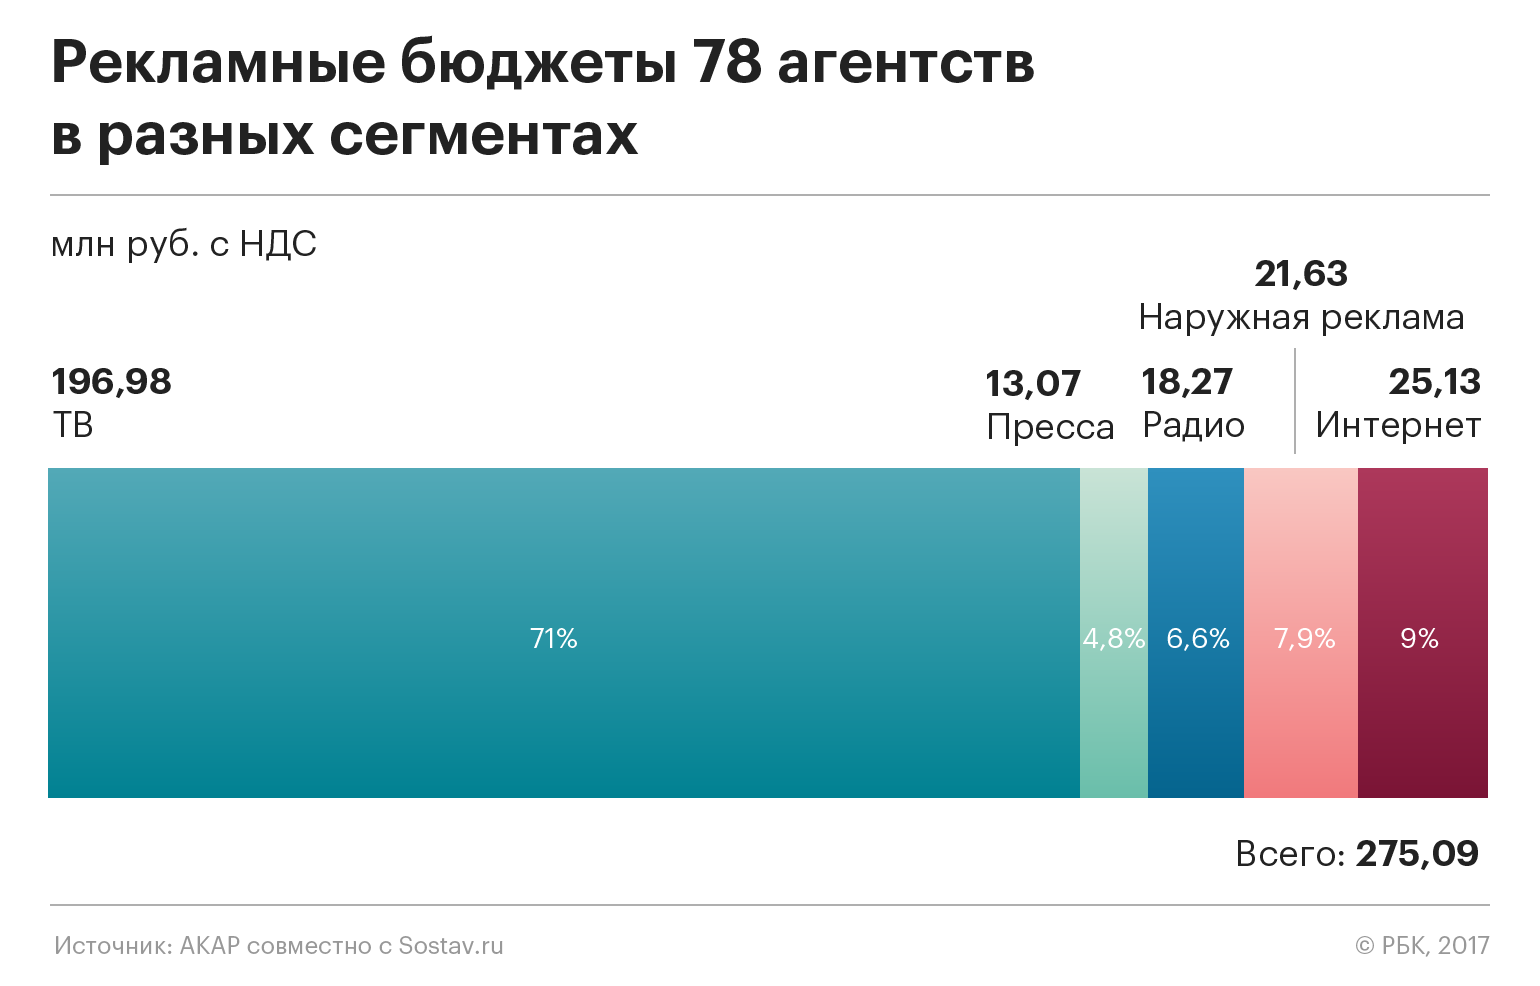 В рейтинге крупнейших рекламных агентств в России сменился лидер